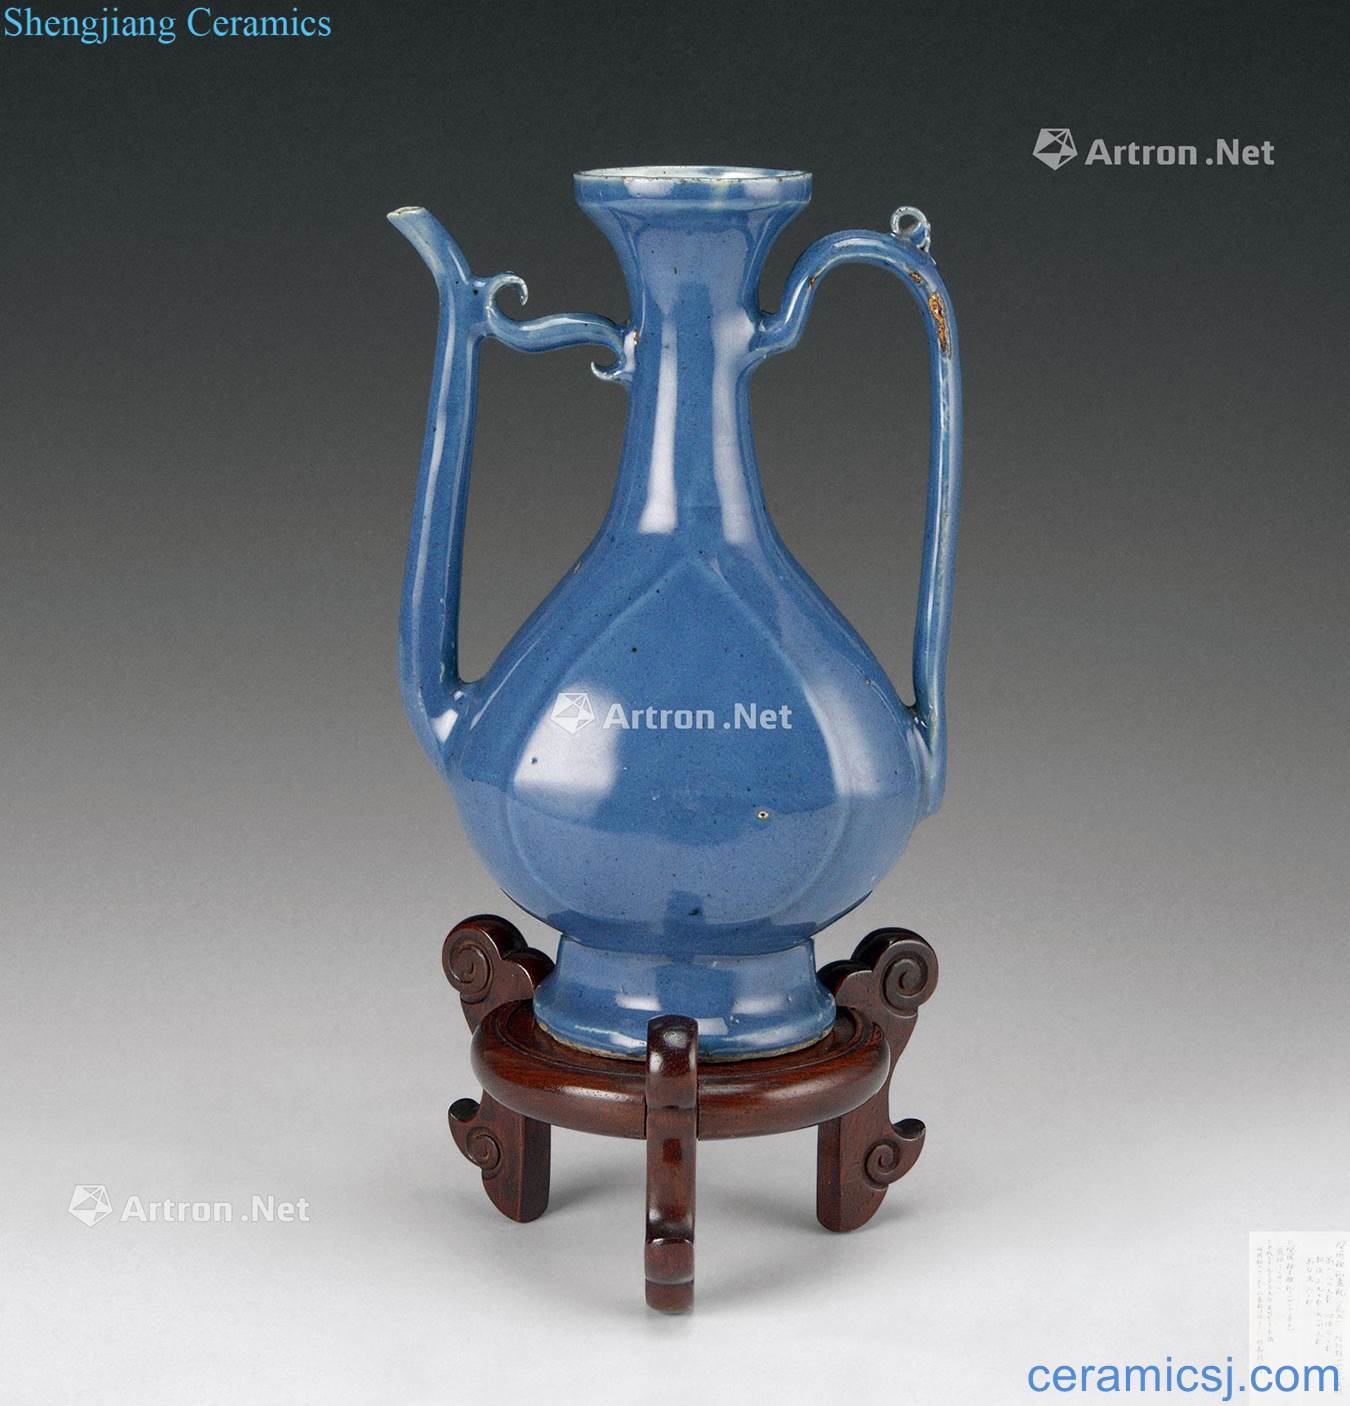 In the Ming dynasty, qing dynasty (1368-1911) blue glaze ewer